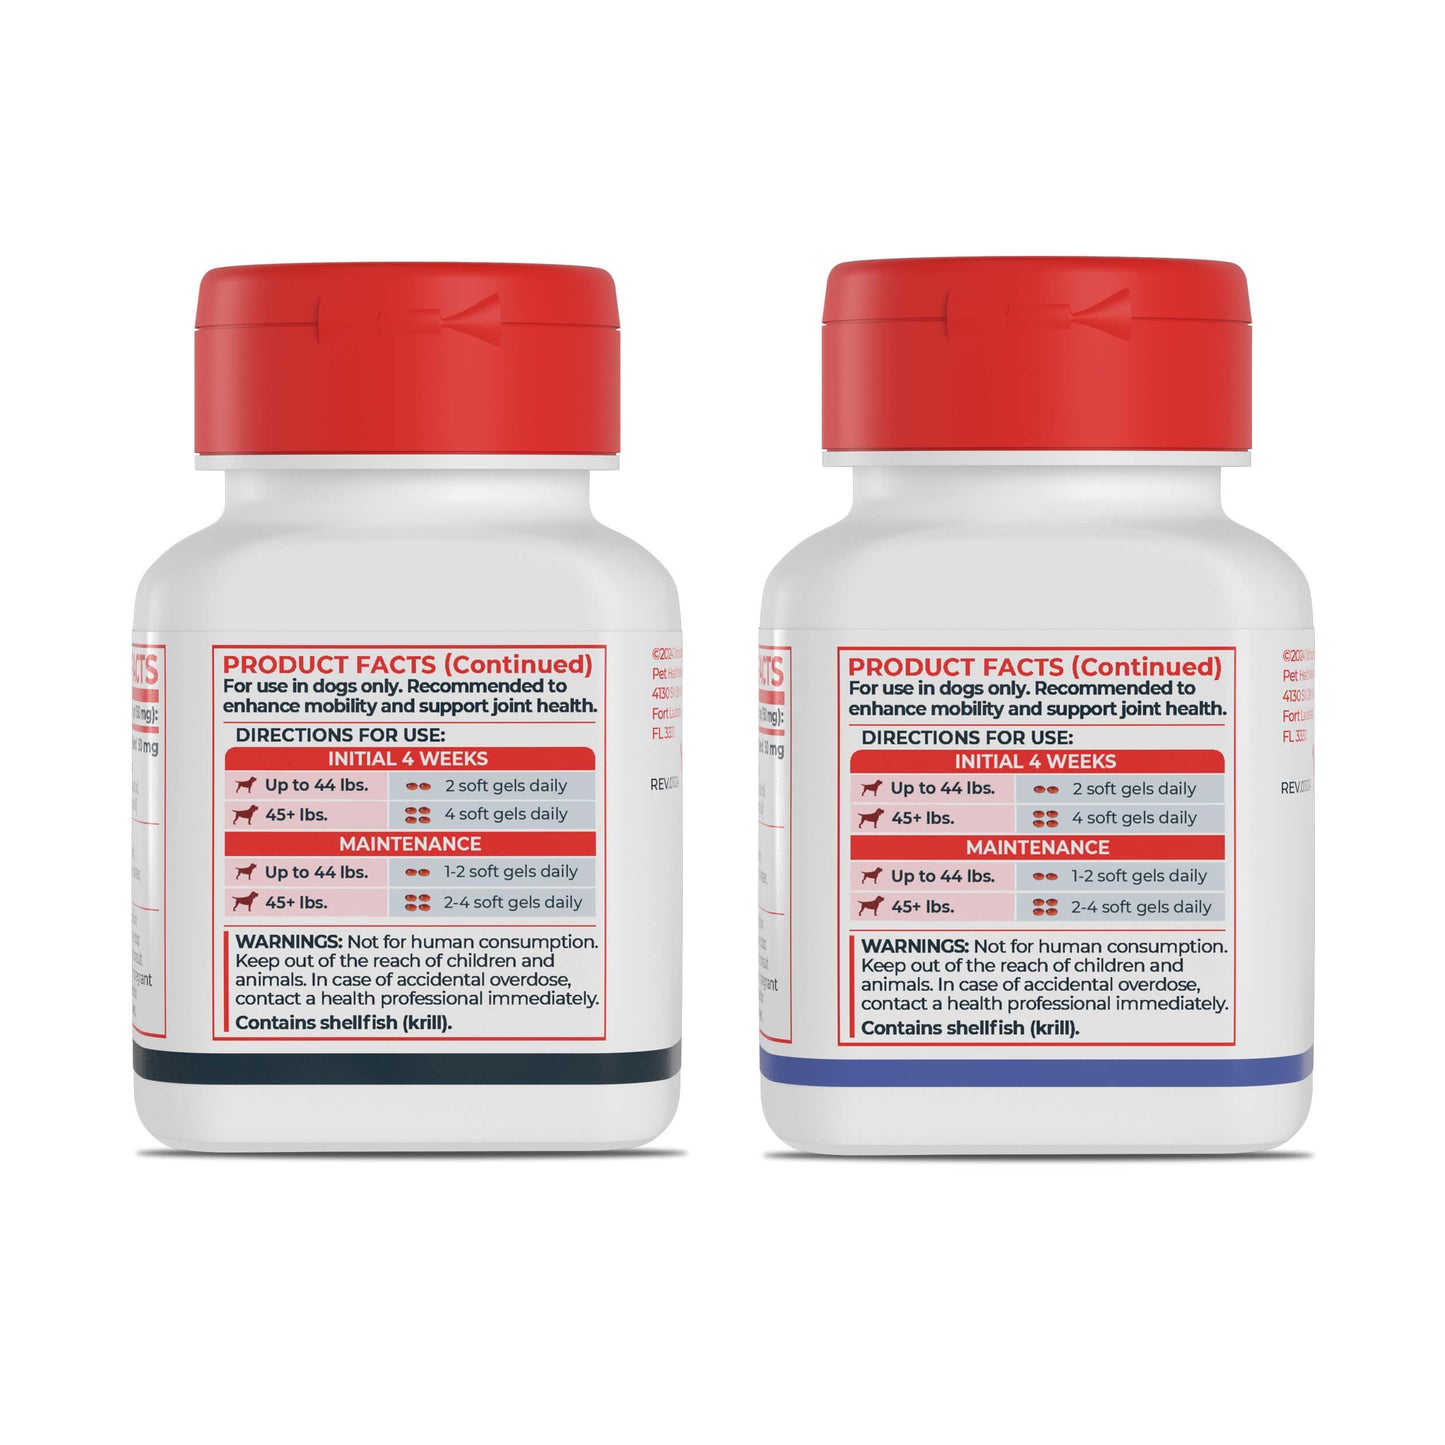 Antinol® Plus - 150ct